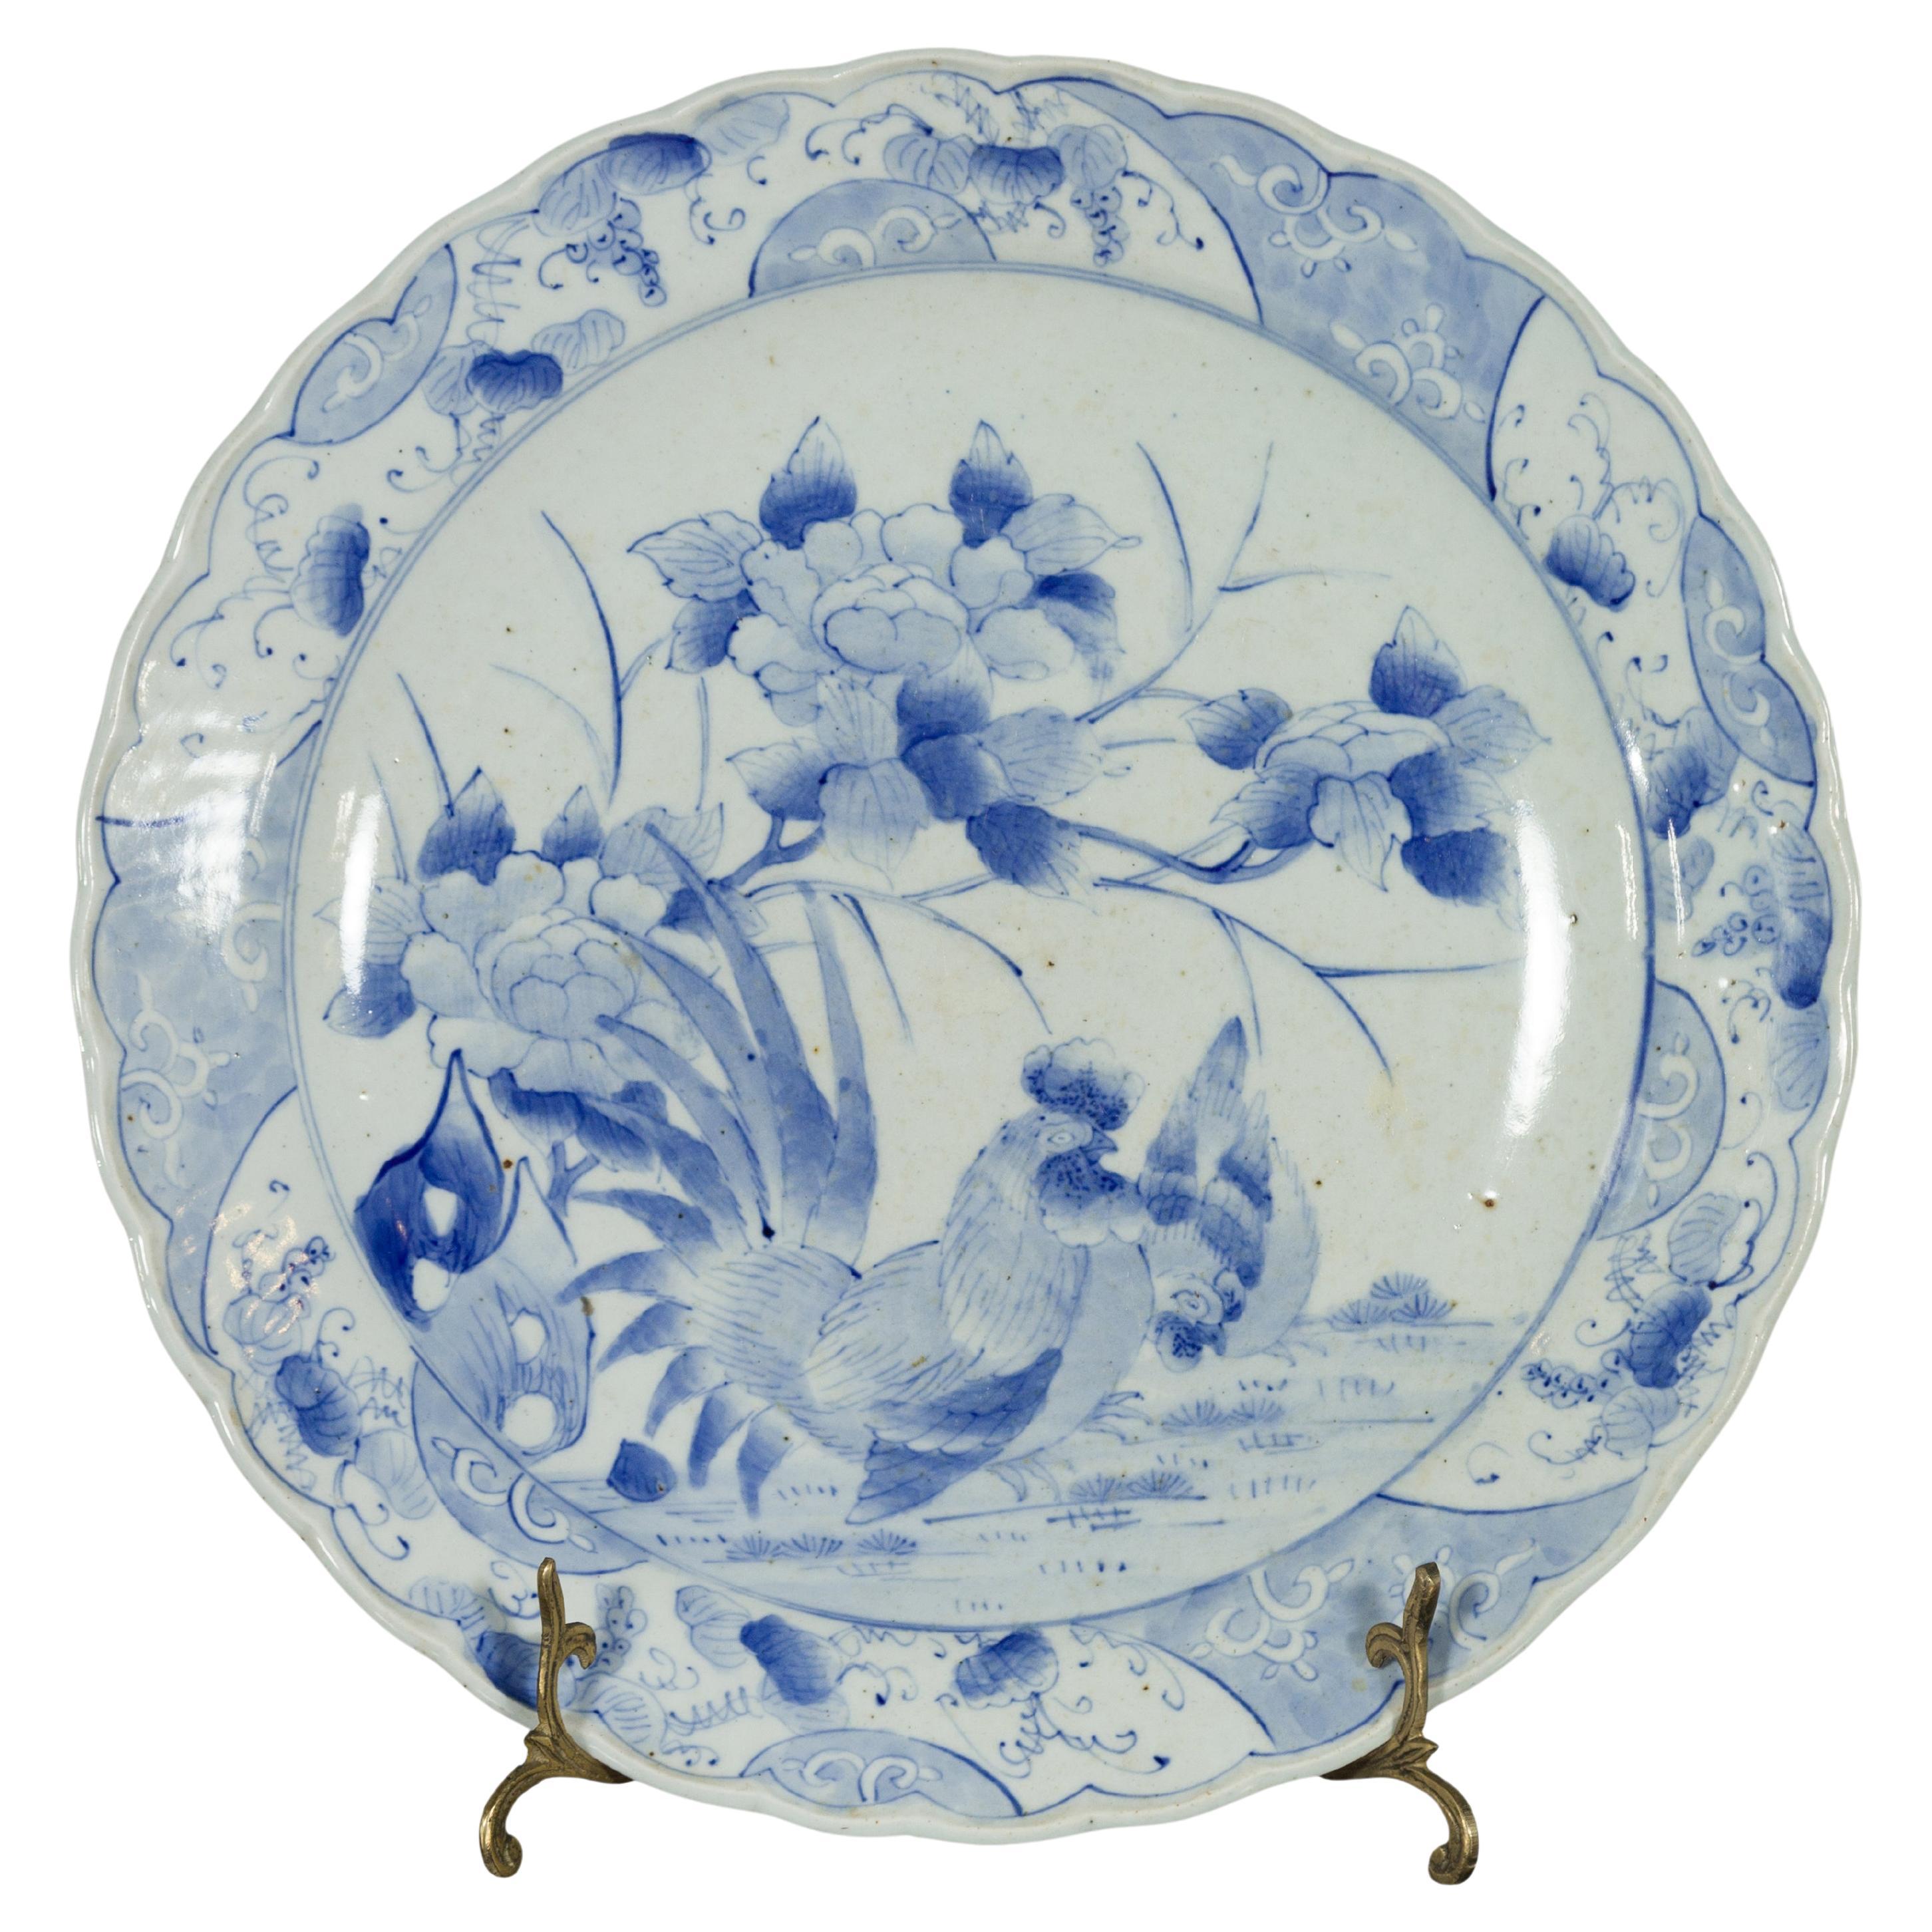 Japanischer handbemalter blau-weißer Porzellanteller des 19. Jahrhunderts mit Hahnen